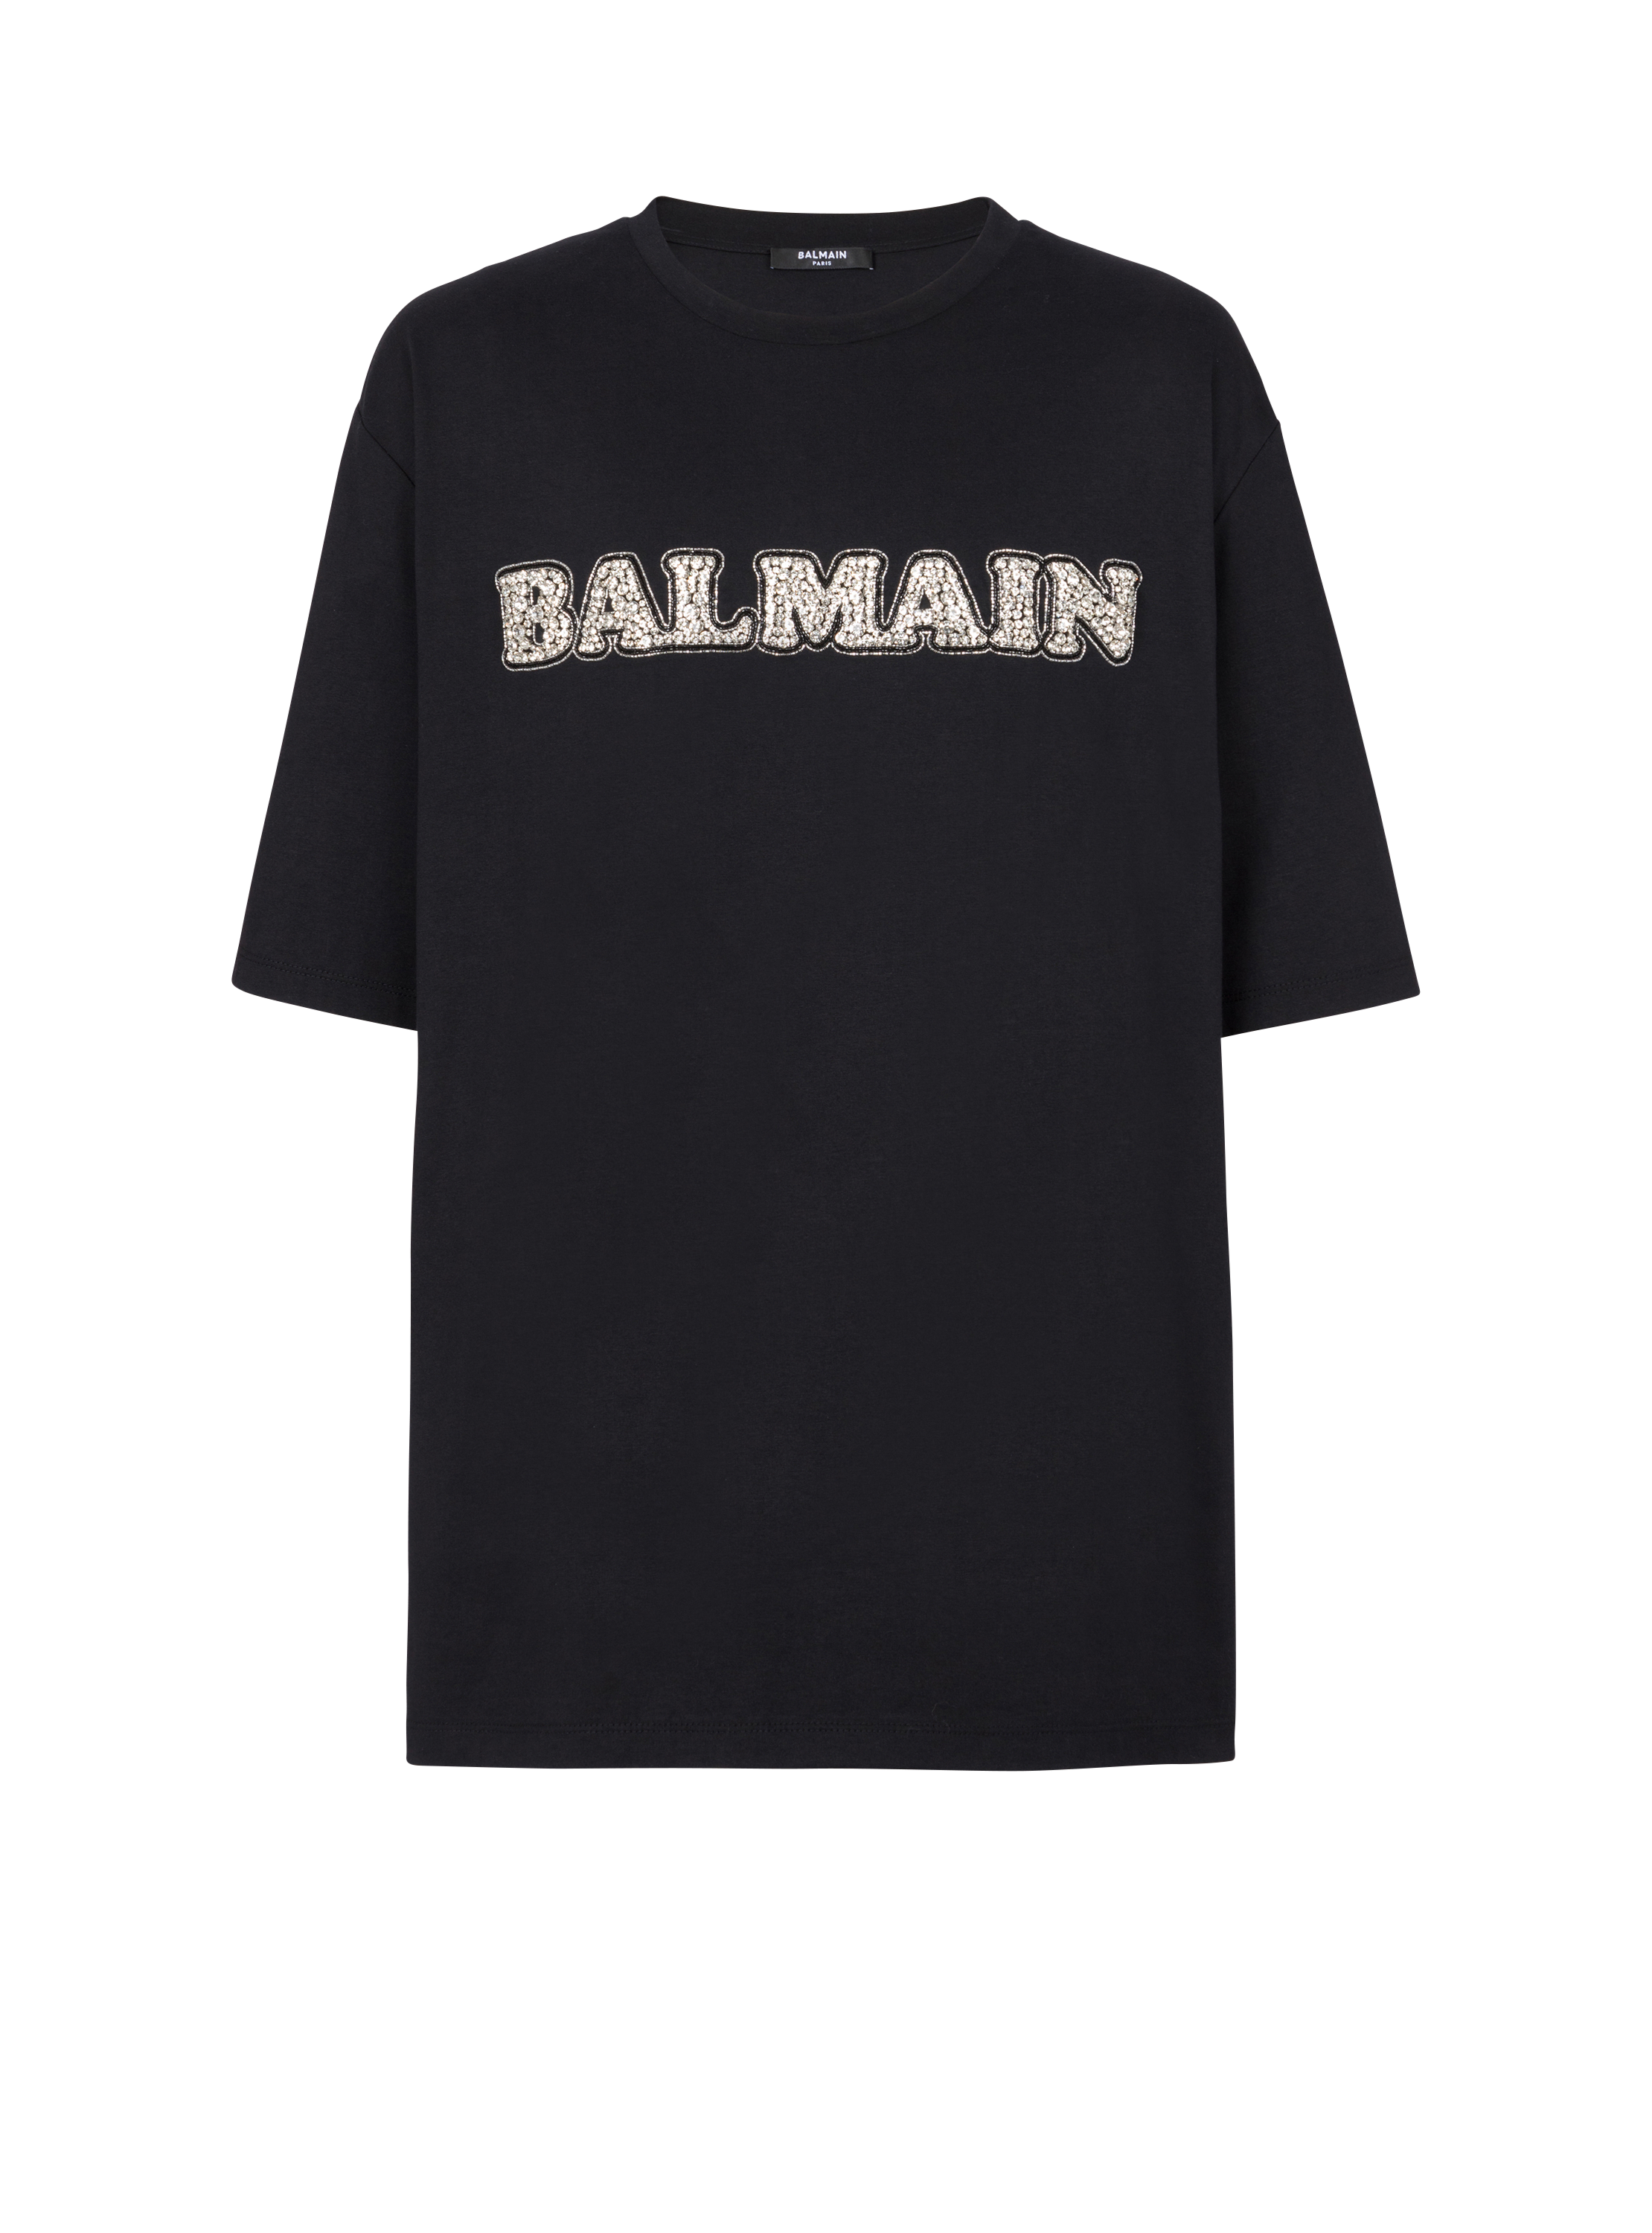 T-shirt Balmain Rétro brodé, argent, hi-res